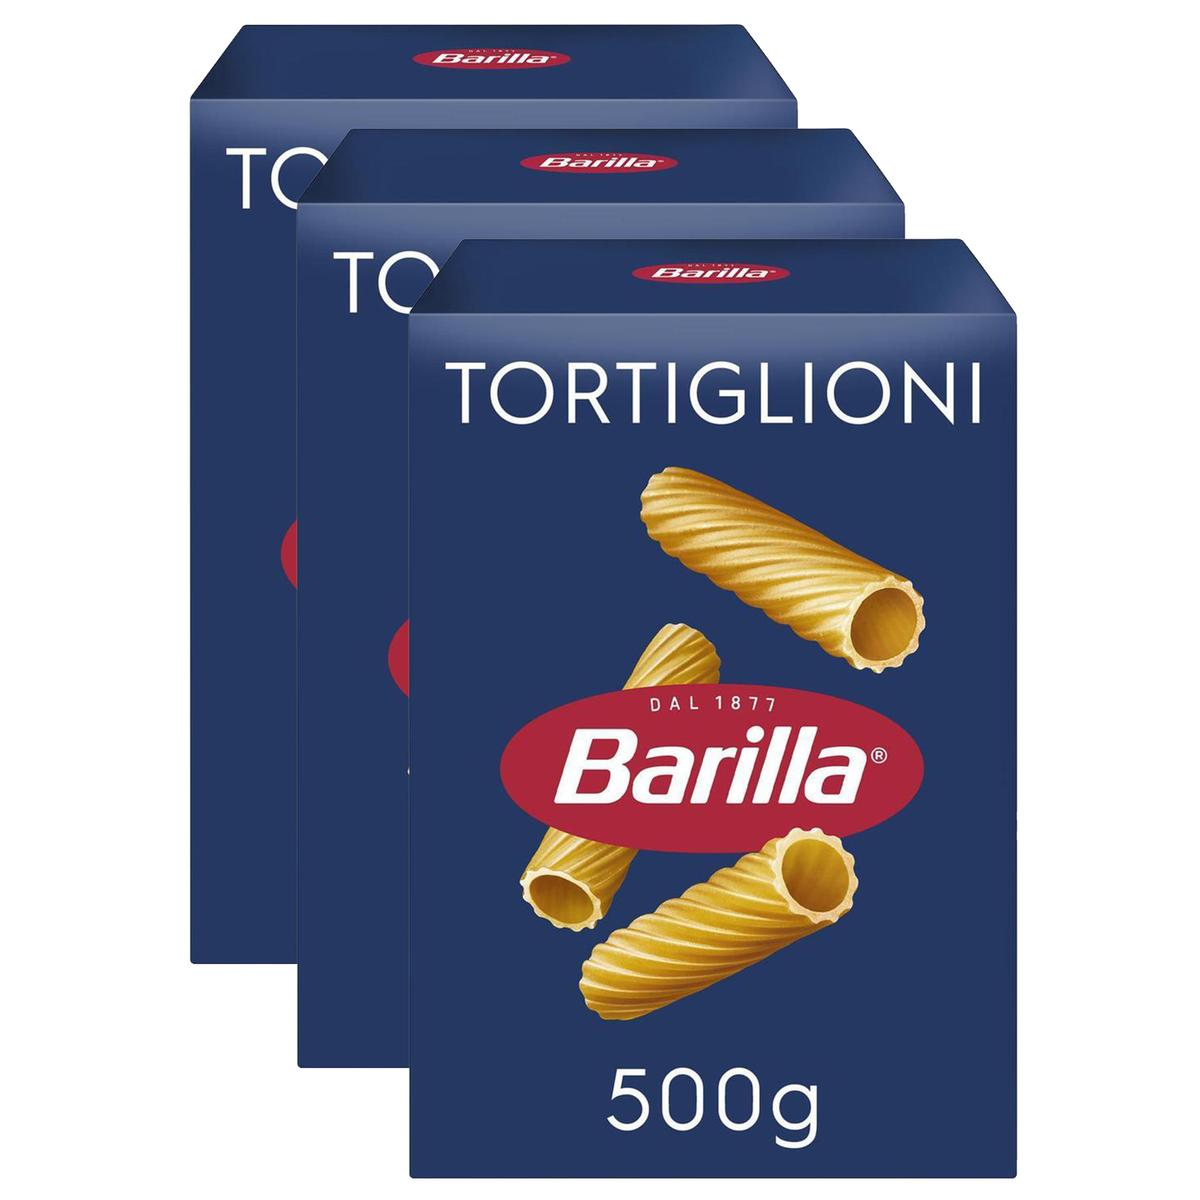 Livraison à domicile Promotion Barilla Pâtes Tortiglioni, Lot de 3x500g